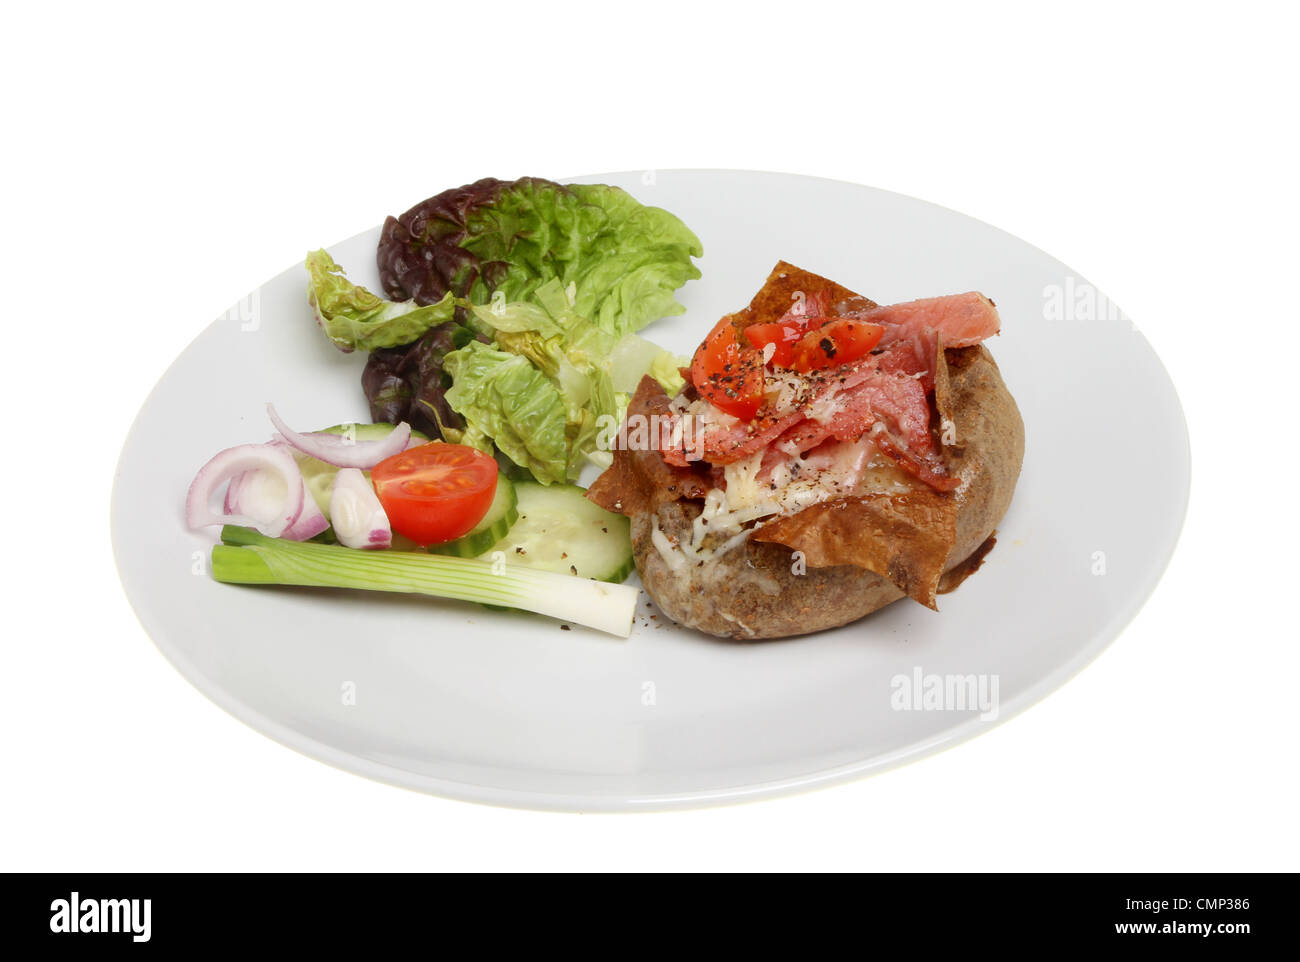 De fromage et de bacon, pomme de terre au four et de la salade sur une assiette blanche contre isolés Banque D'Images